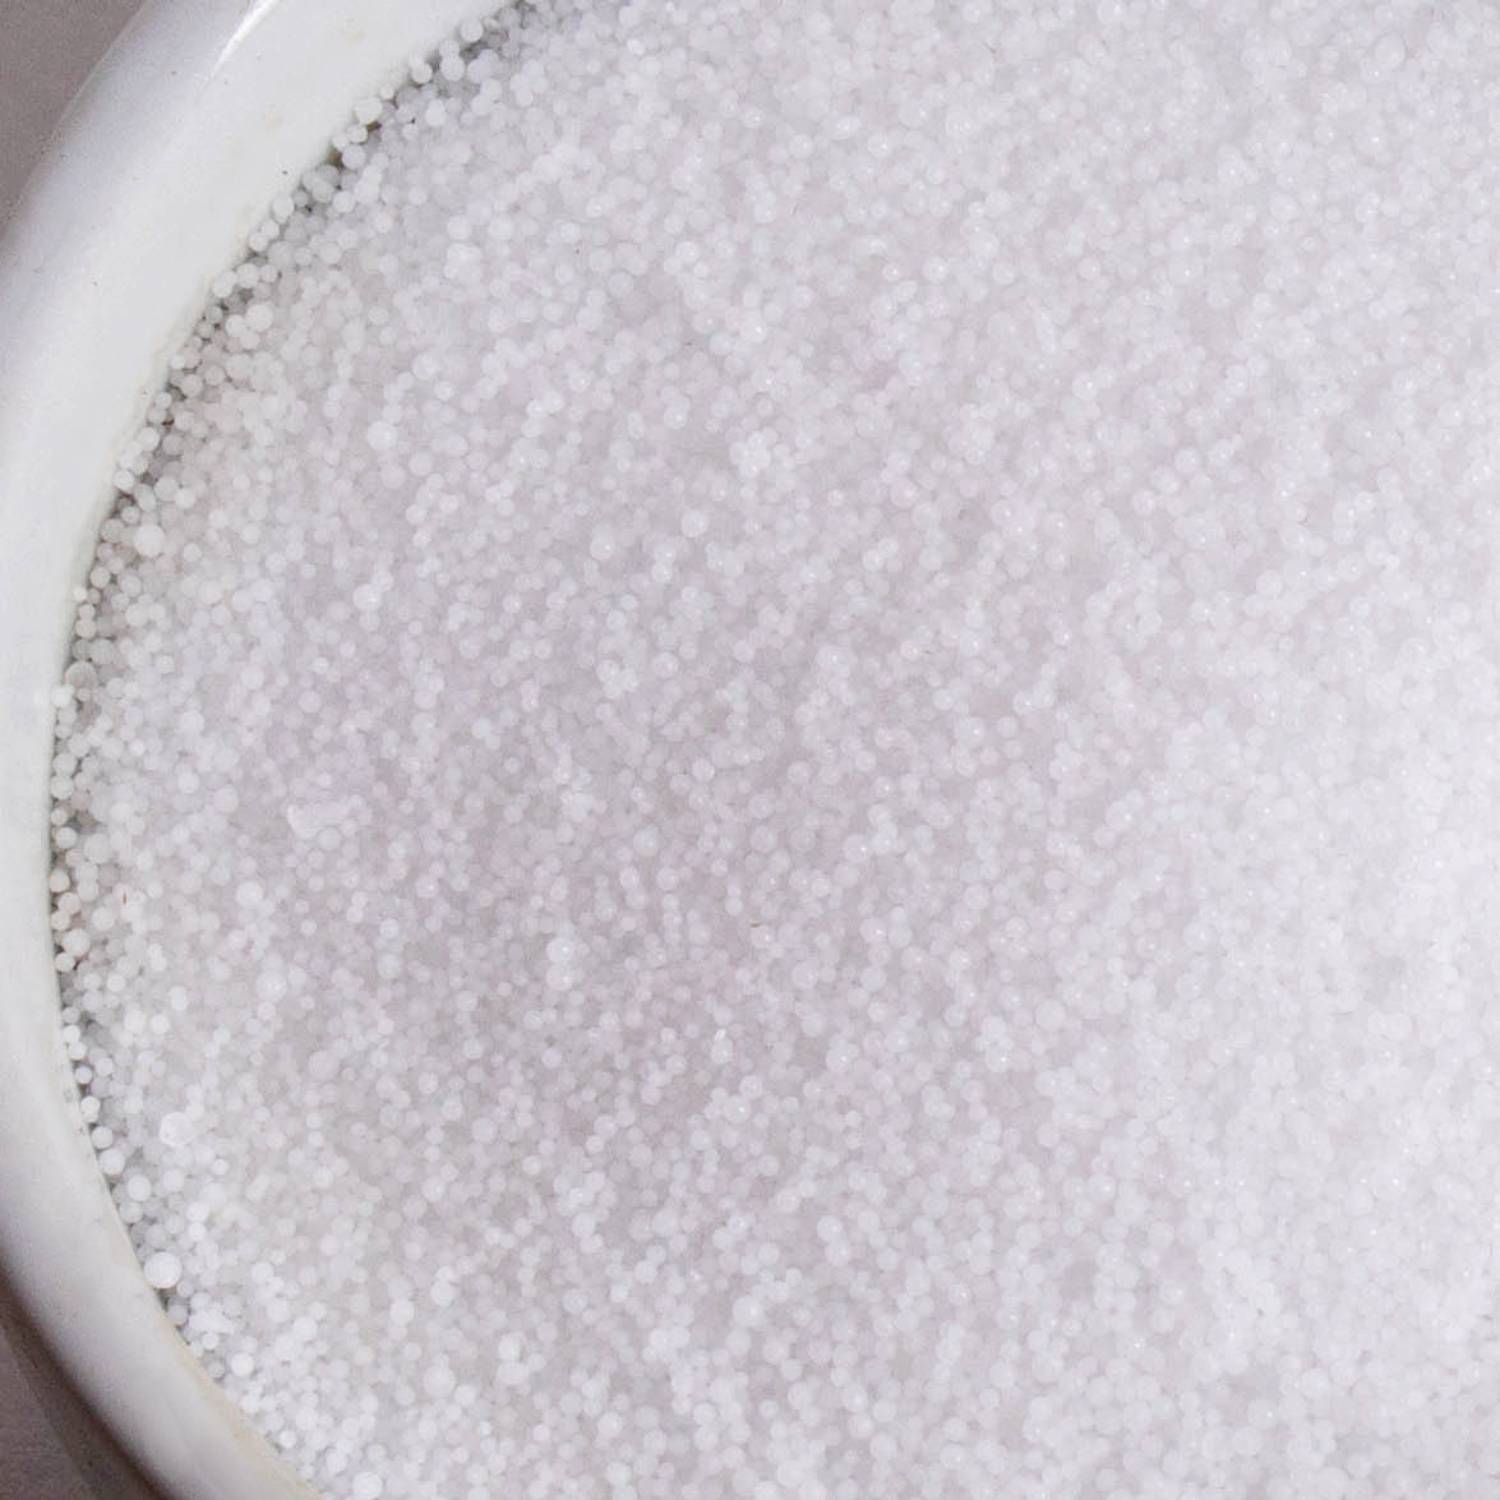 Sodium Hydroxide for Soapmaking, Lye Beads